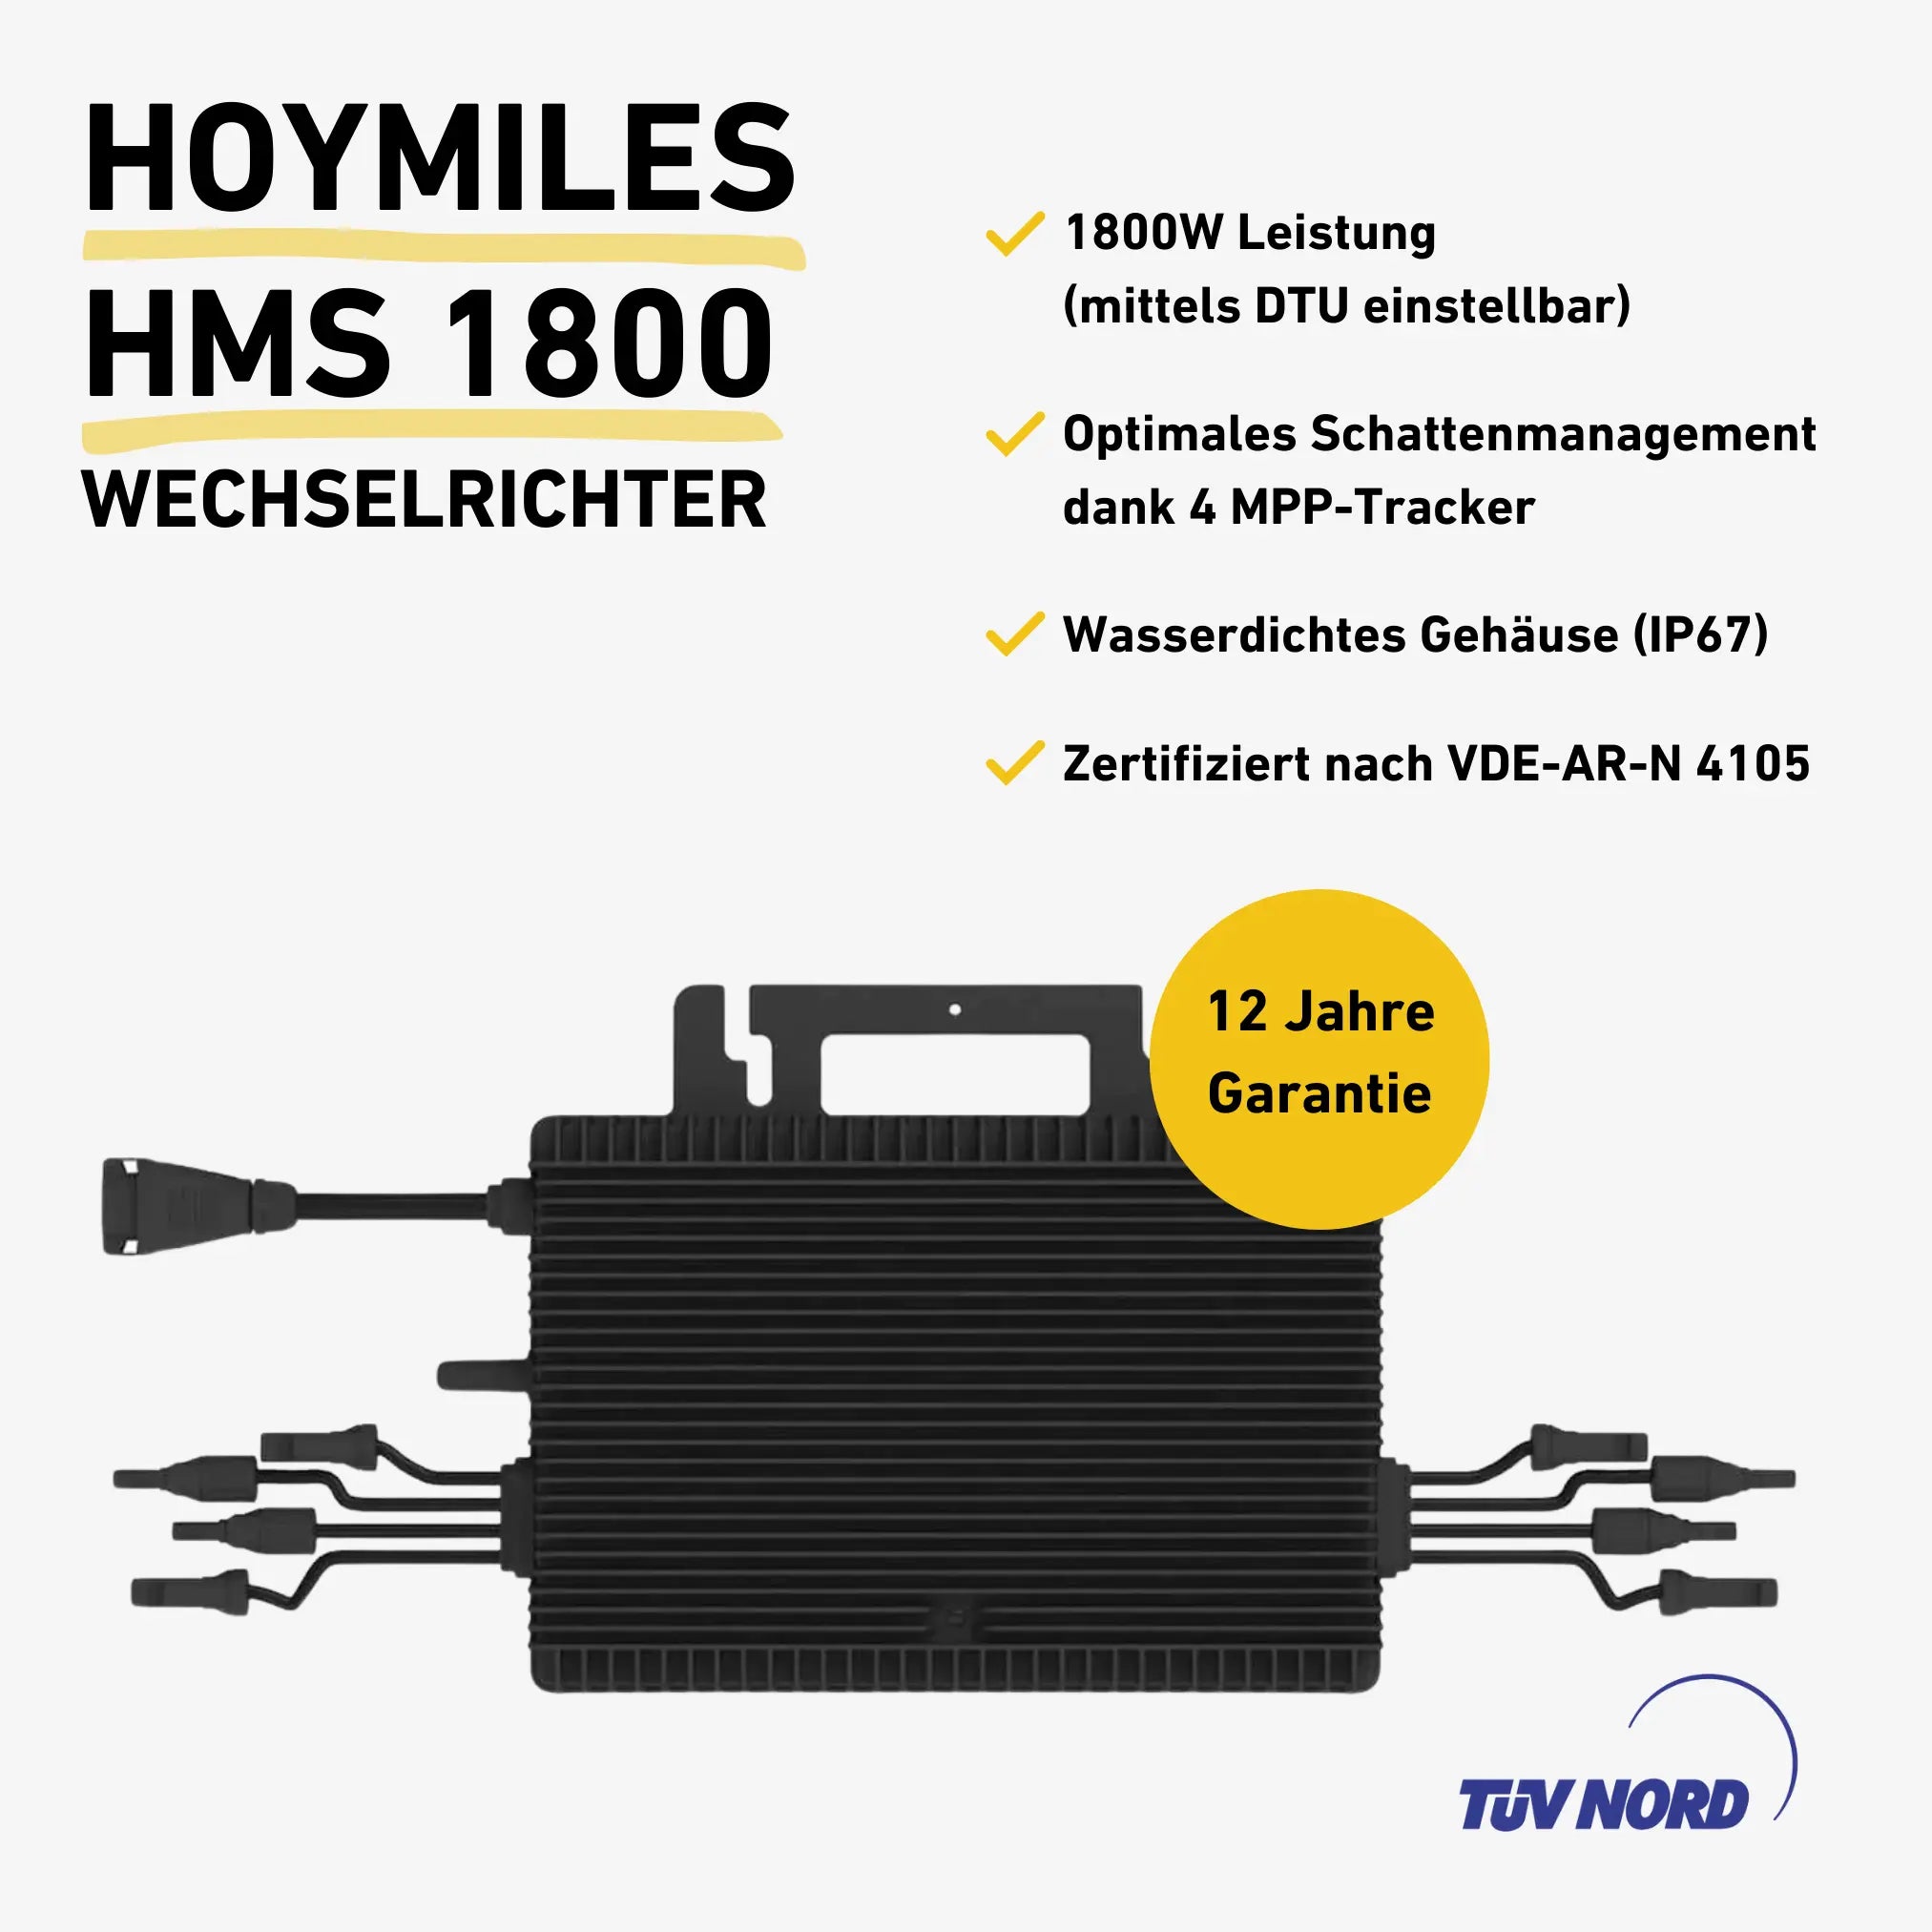 Hoymiles HMS 1800 Wechselrichter Produktbild mit Produkteigenschaften